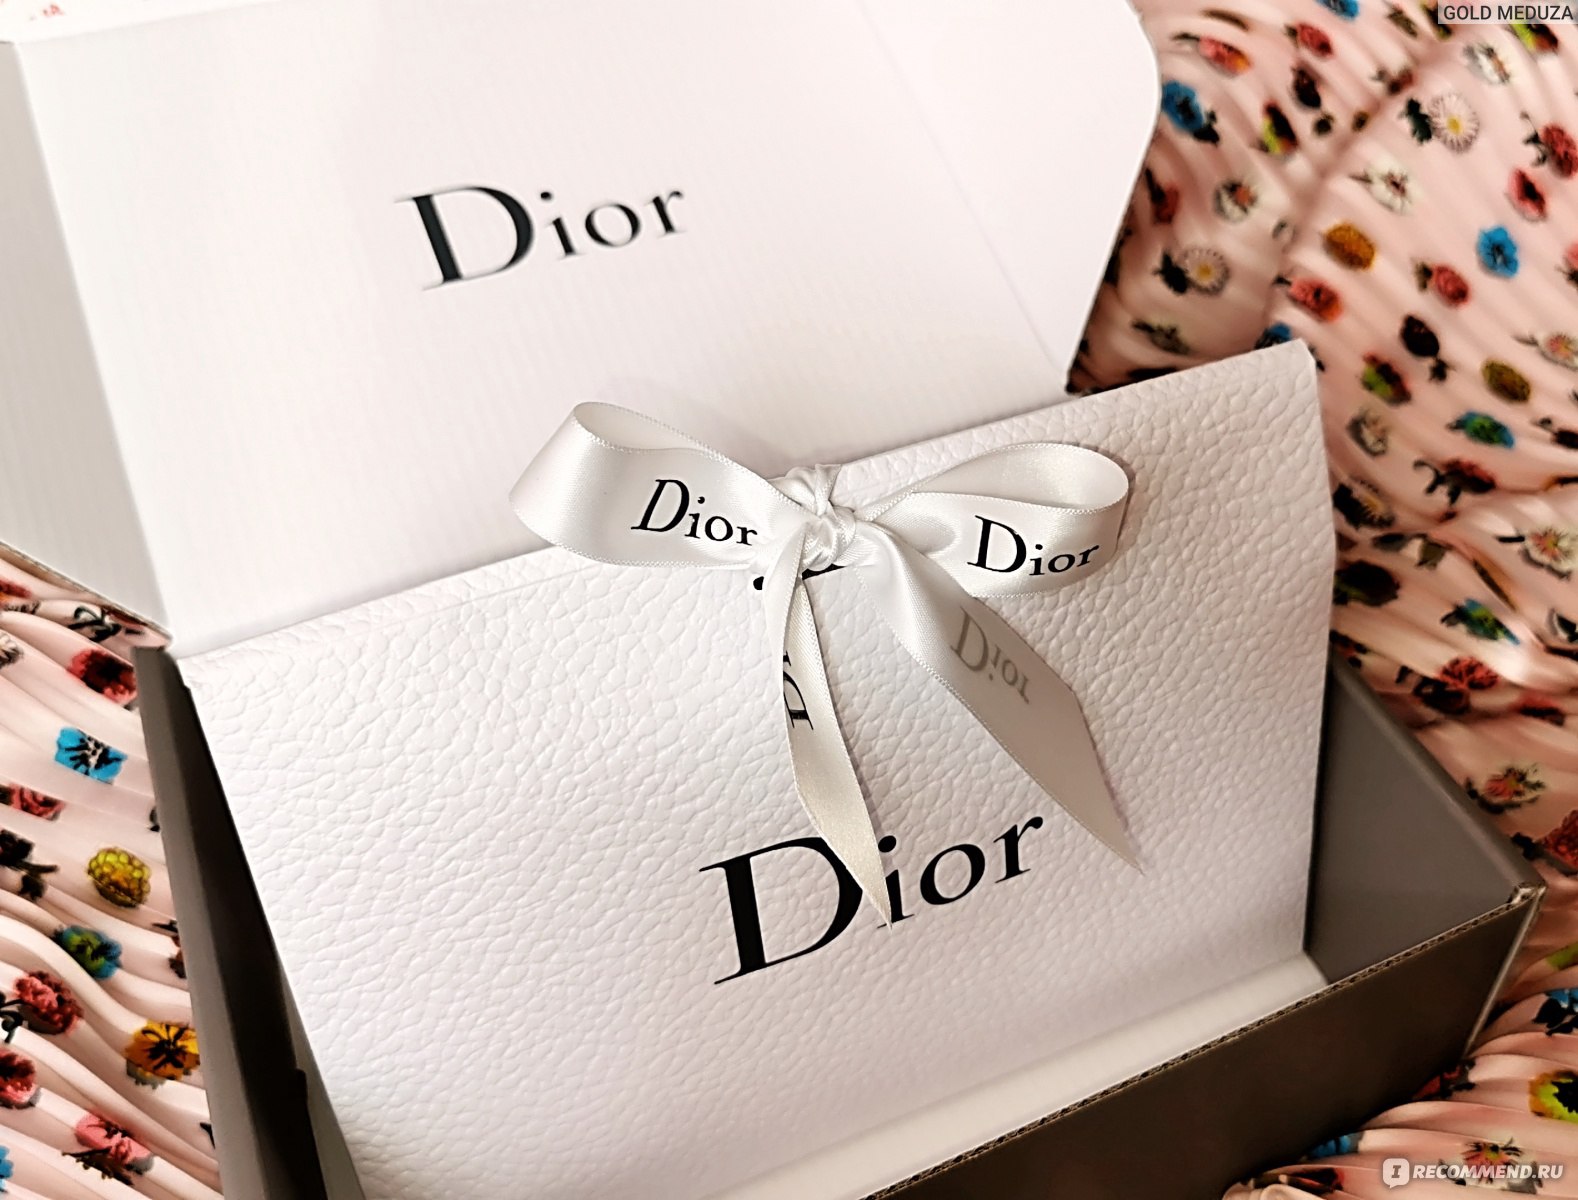 💄 Анпакинг заказа с сайта Dior Beauty Russia + подарки с покупкой 🎁.